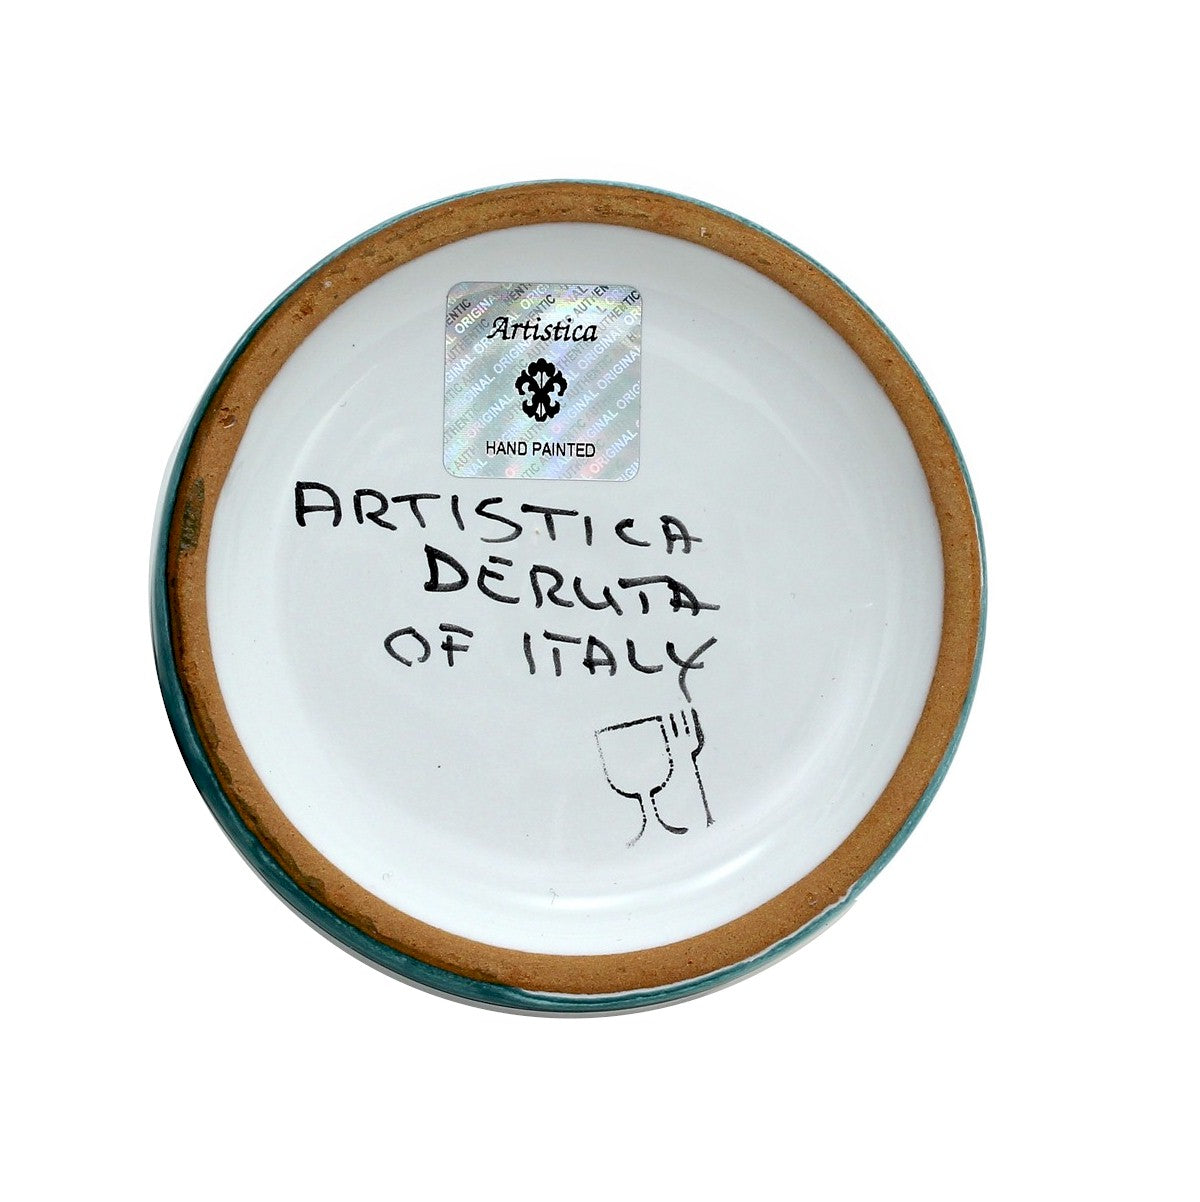 GIFT BOX: With authentic Deruta hand painted ceramic - Deruta Raffaellesco Gallo Pitcher (1 Liter)